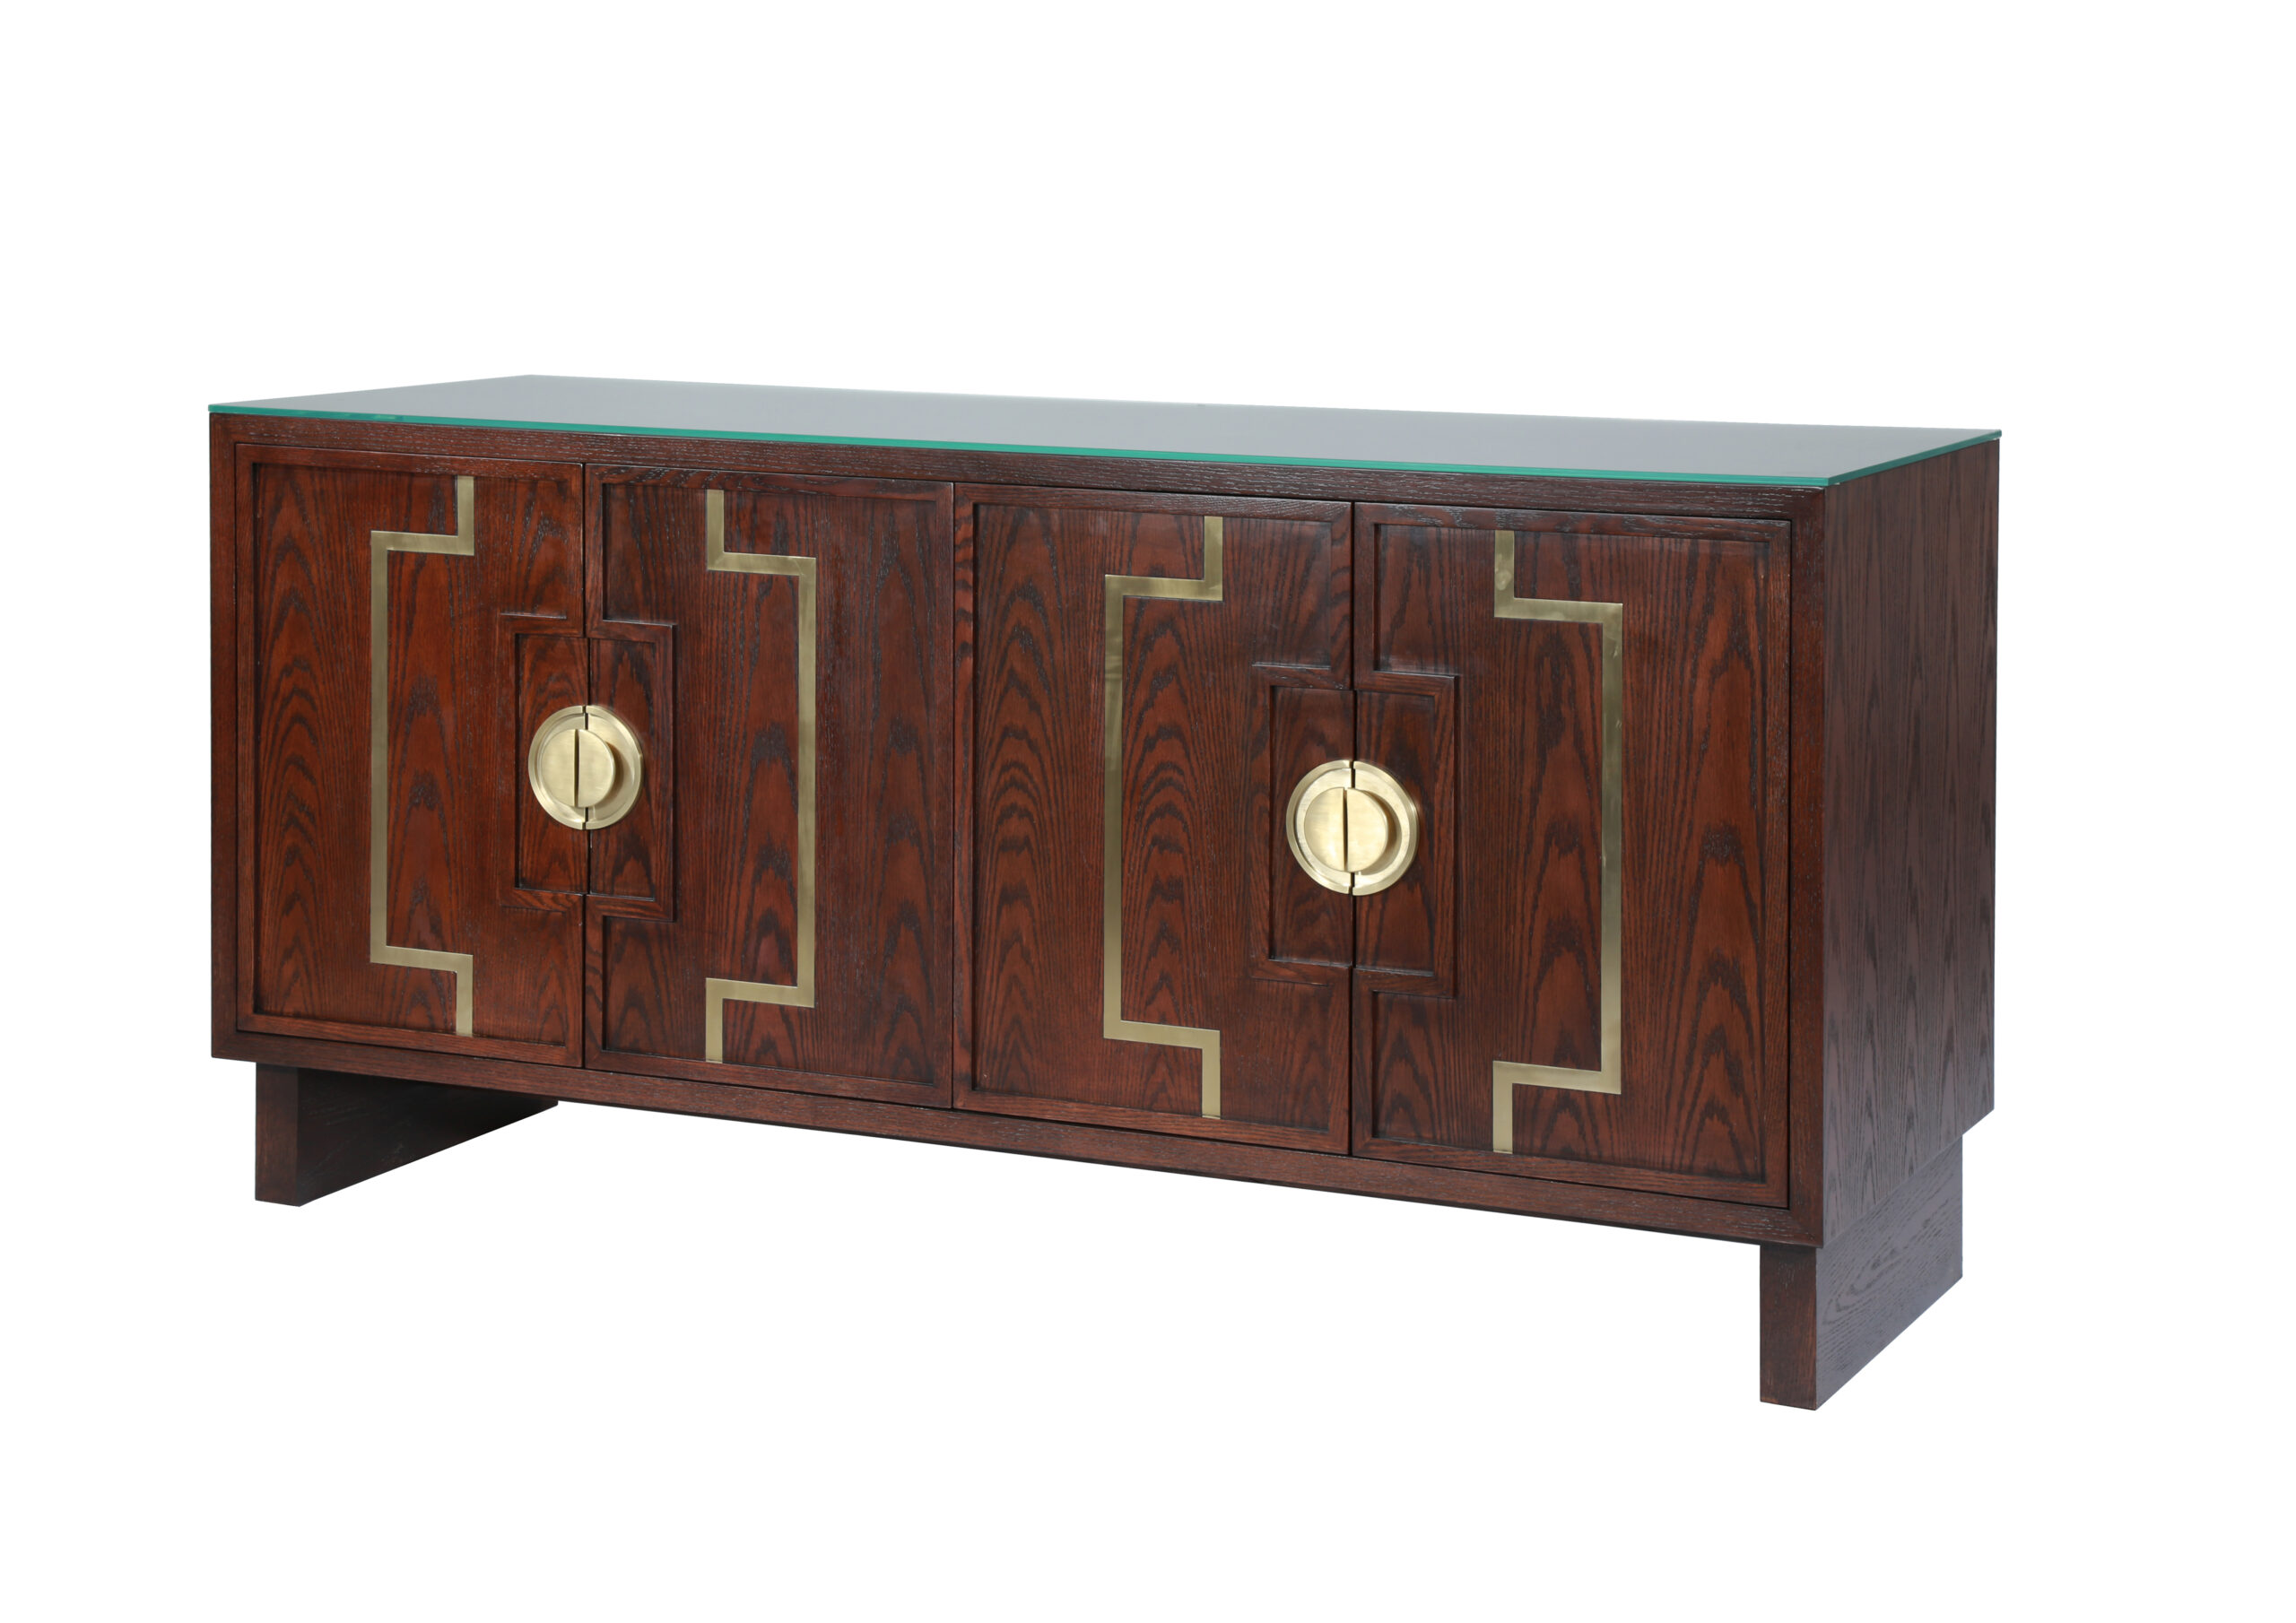 Gainwell hotal furniture -casegoods